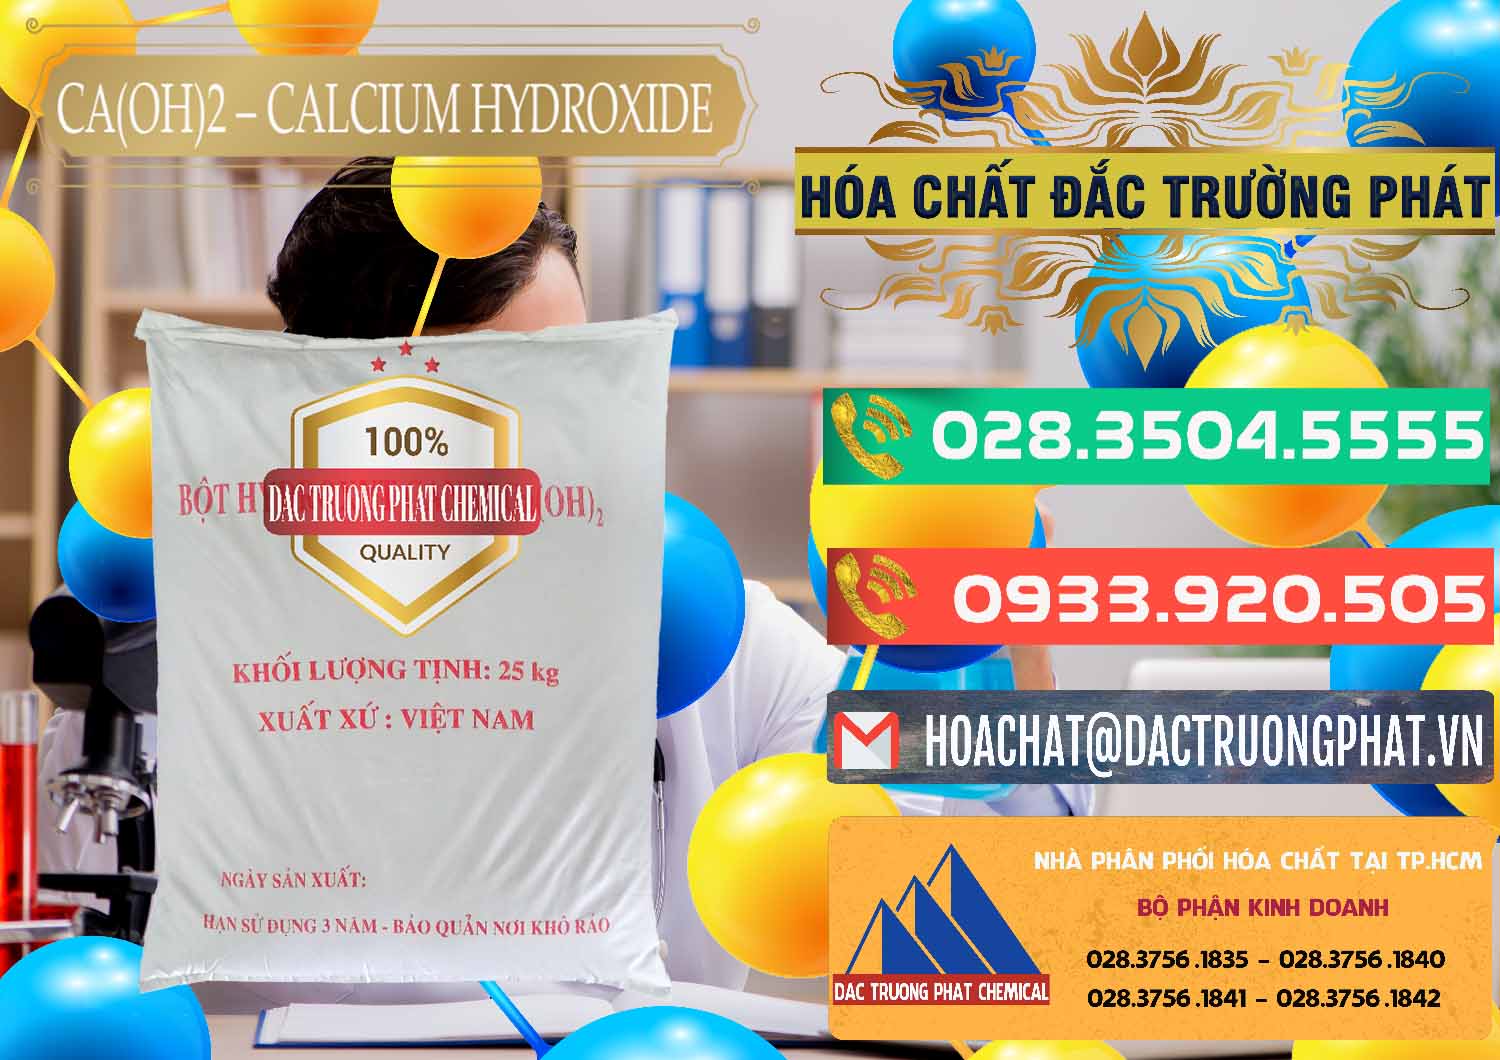 Đơn vị chuyên kinh doanh ( cung cấp ) Ca(OH)2 - Calcium Hydroxide Việt Nam - 0186 - Công ty chuyên cung ứng ( bán ) hóa chất tại TP.HCM - congtyhoachat.com.vn